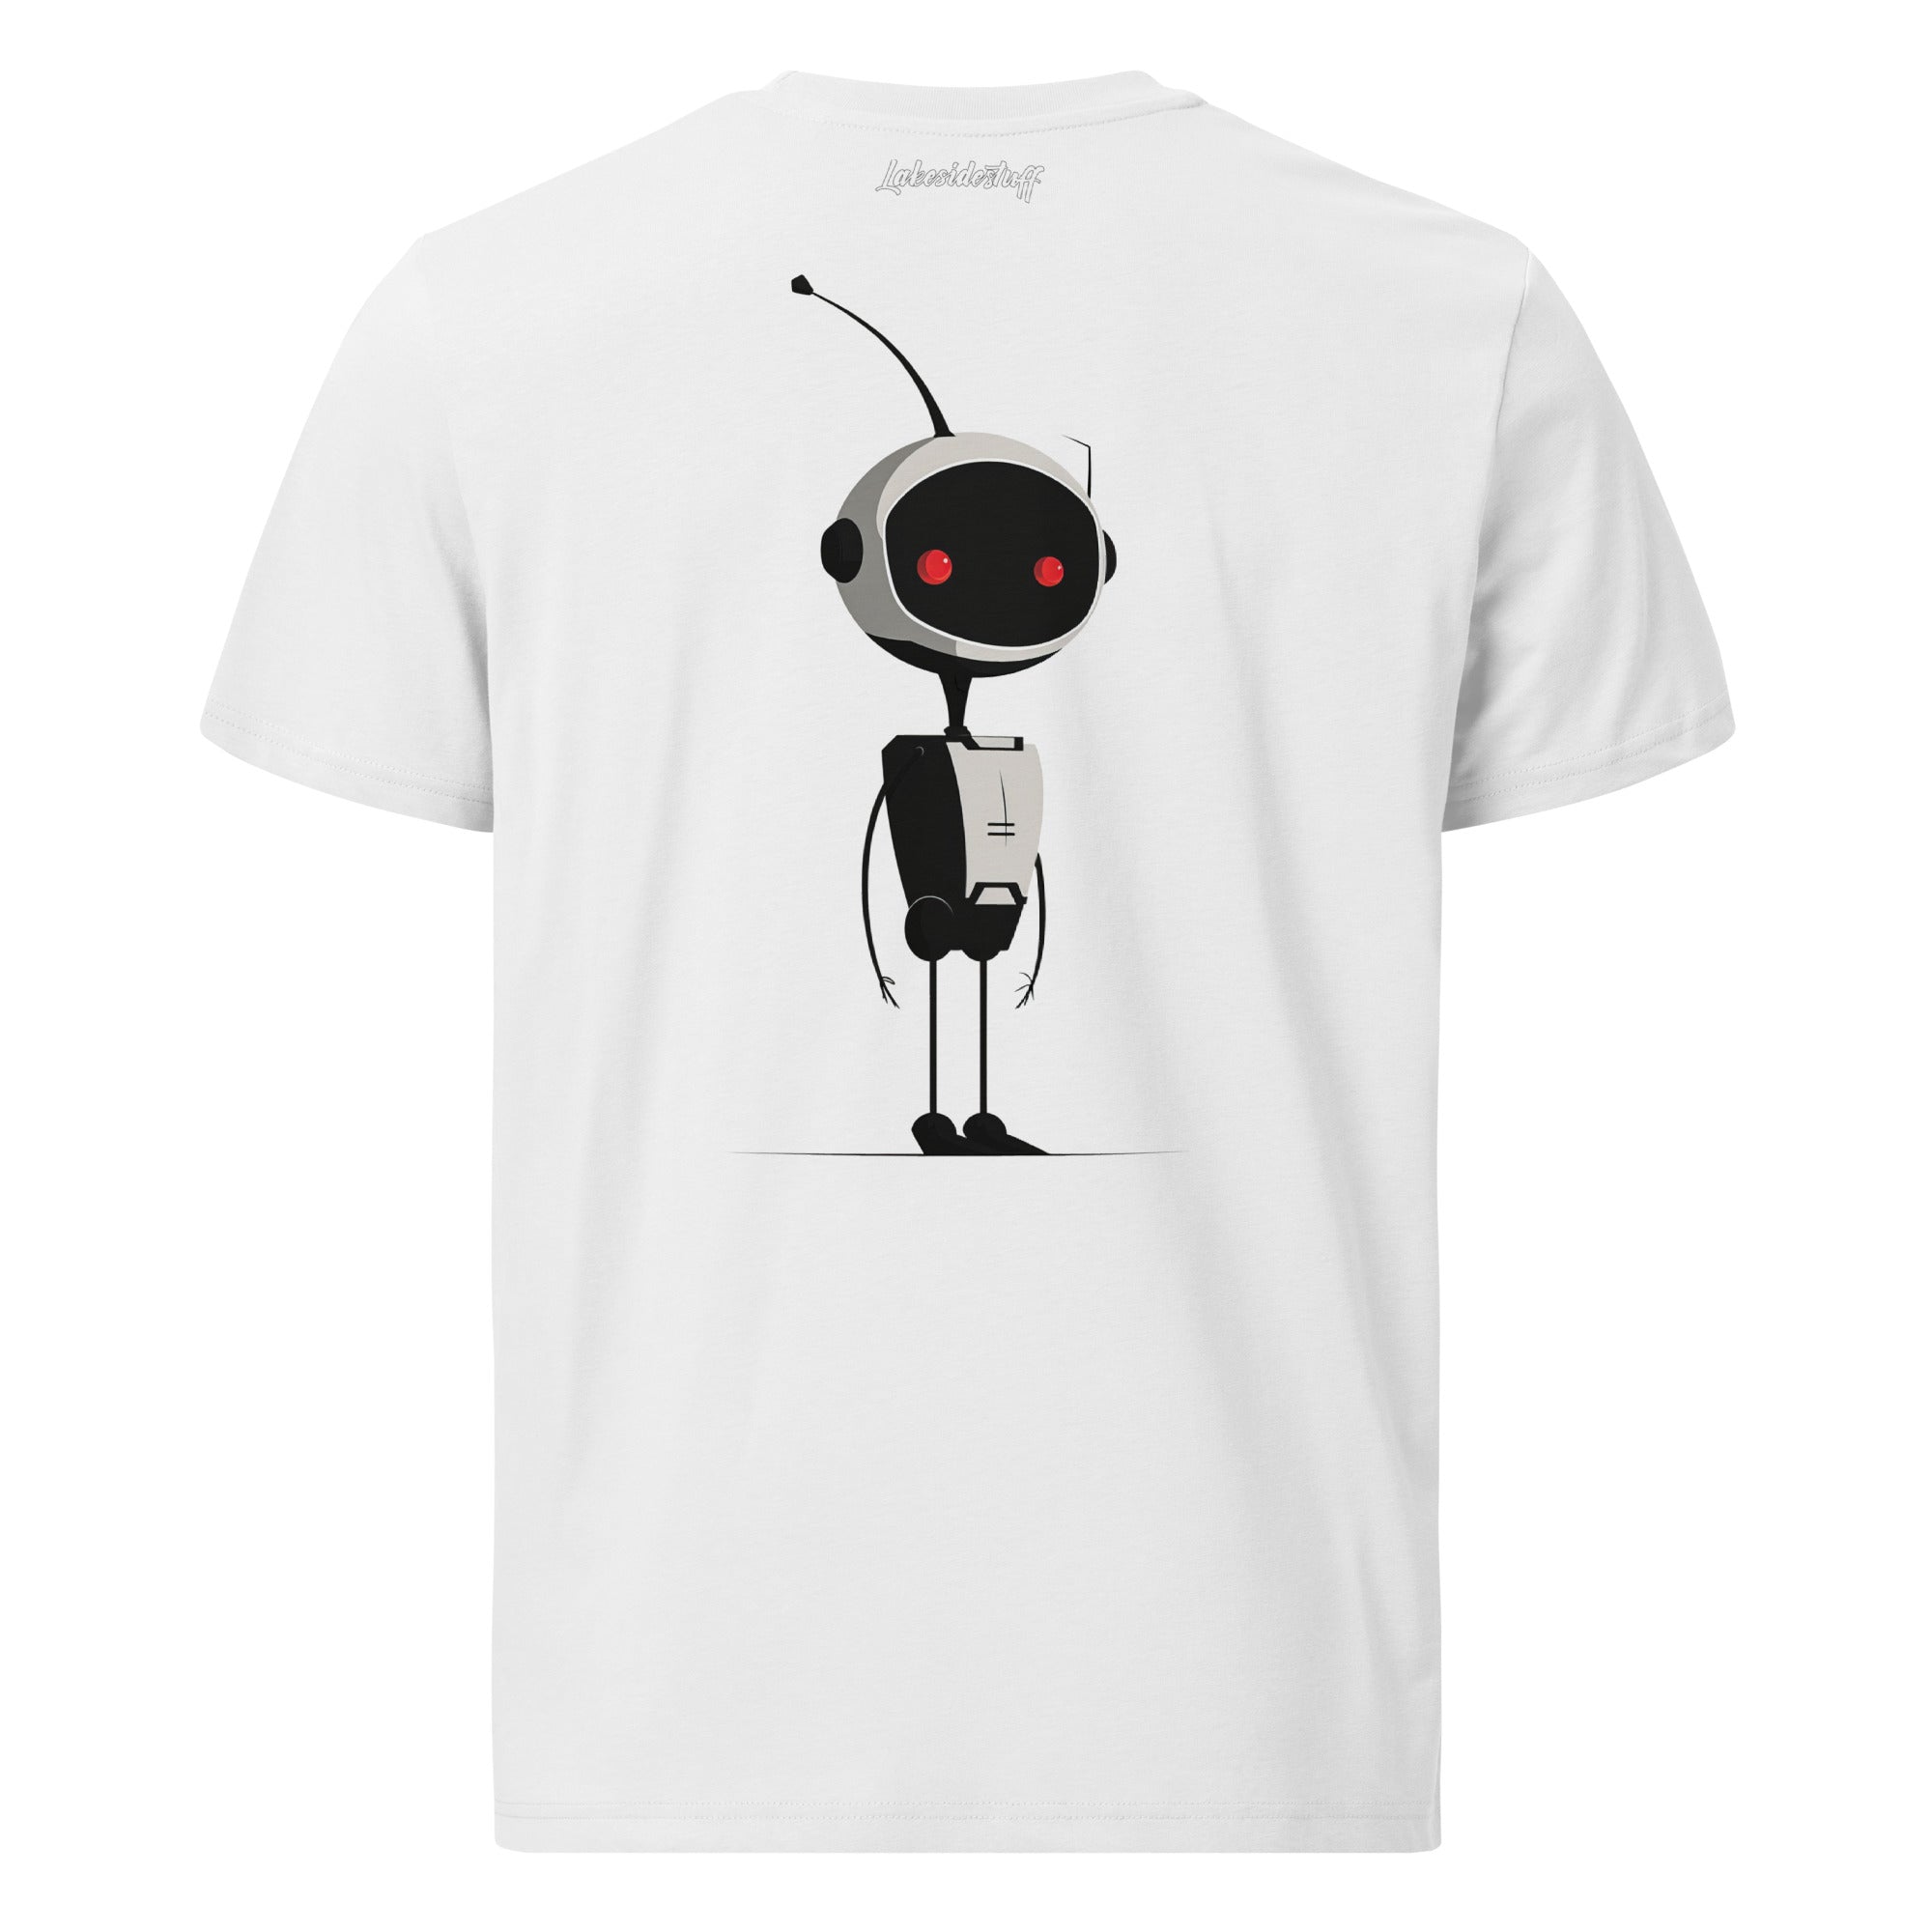 T-Shirt - Backprint - Robot red eye